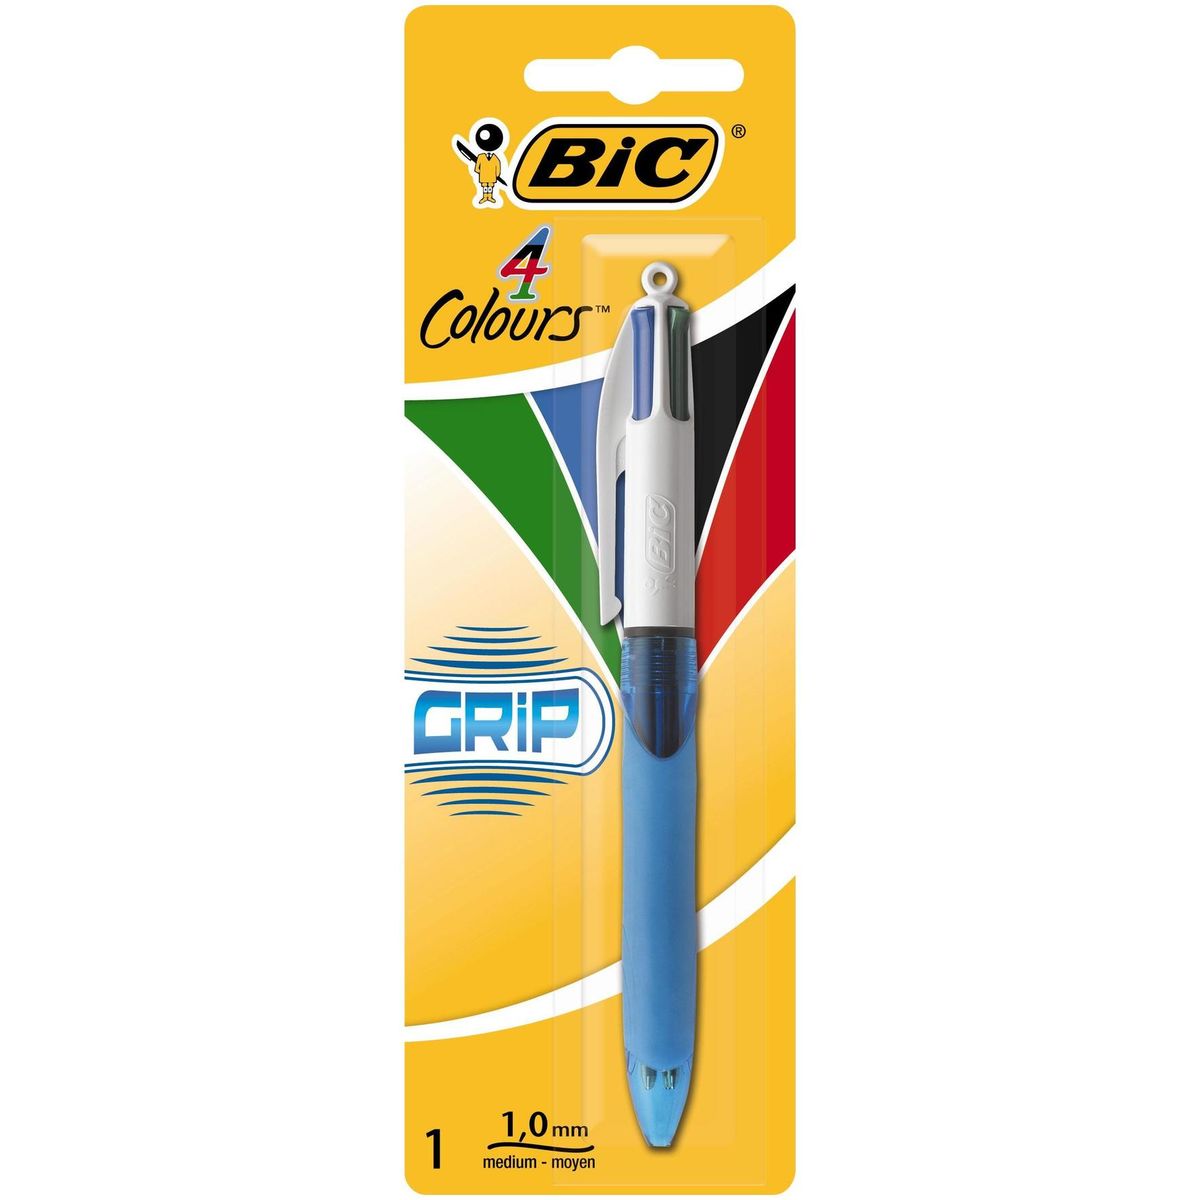 Bic 4 Colours stylo-bille rétractable Grip confort 1mm